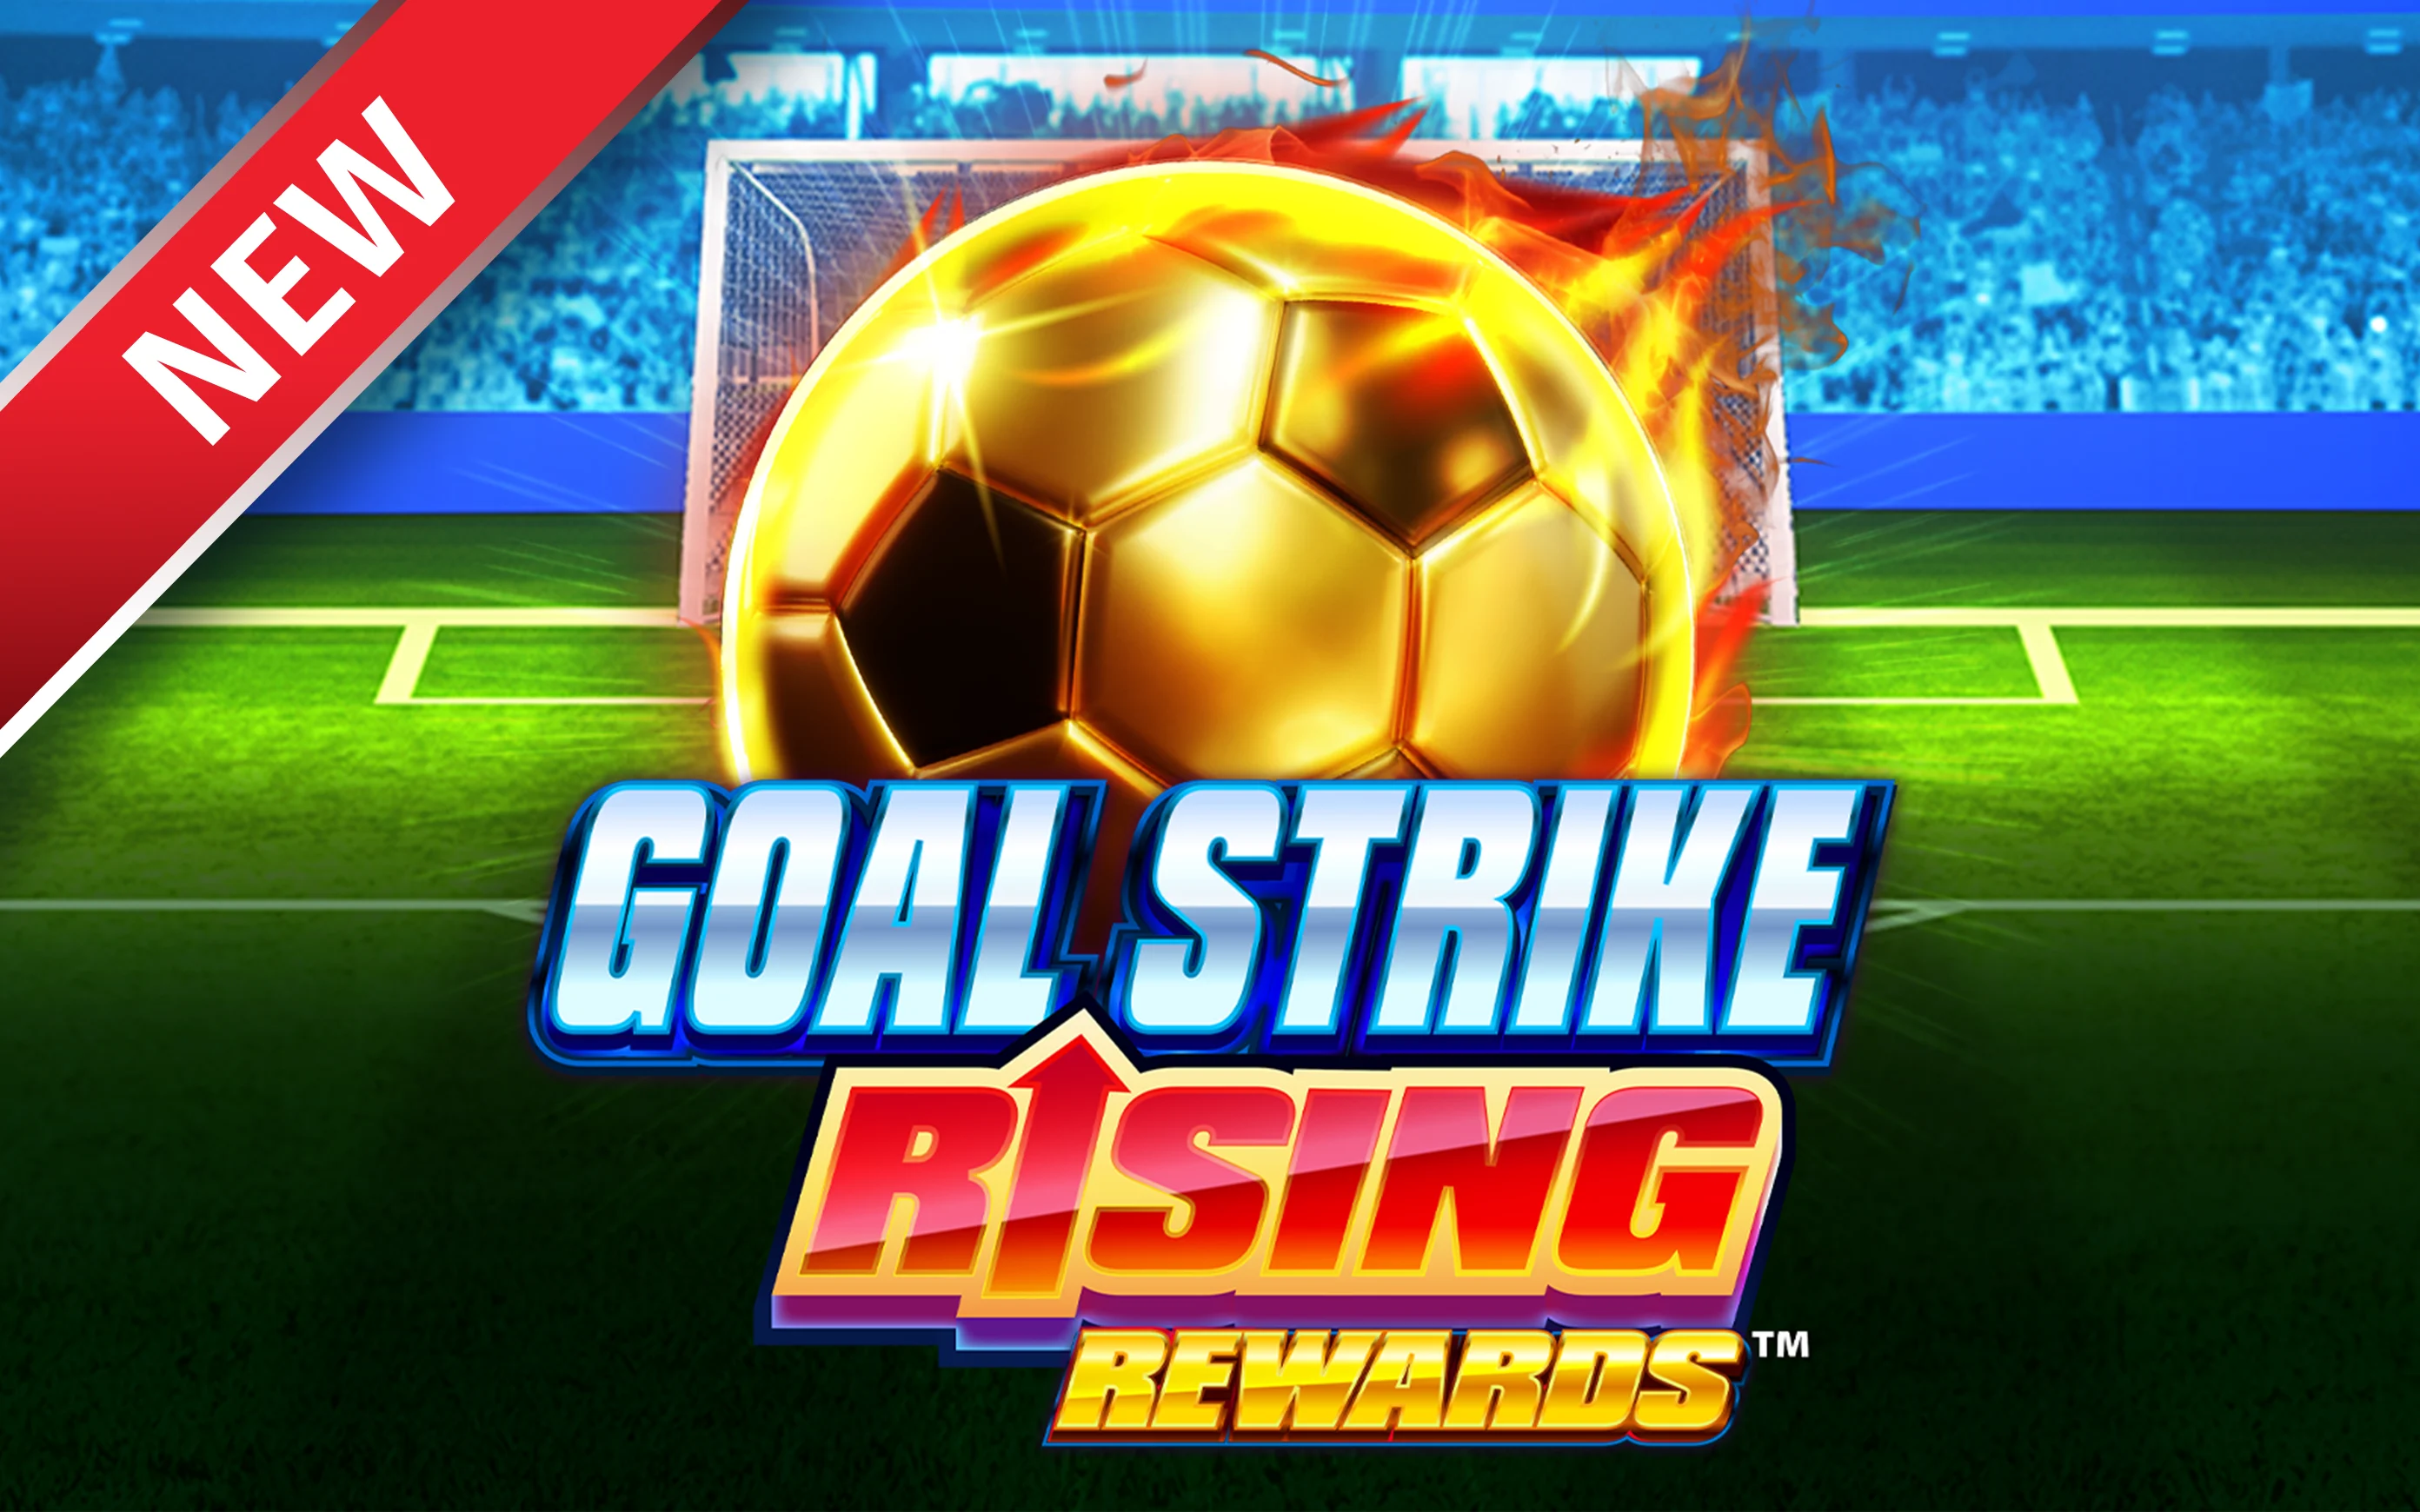 Starcasino.be online casino üzerinden Goal Strike Rising Rewards™ oynayın